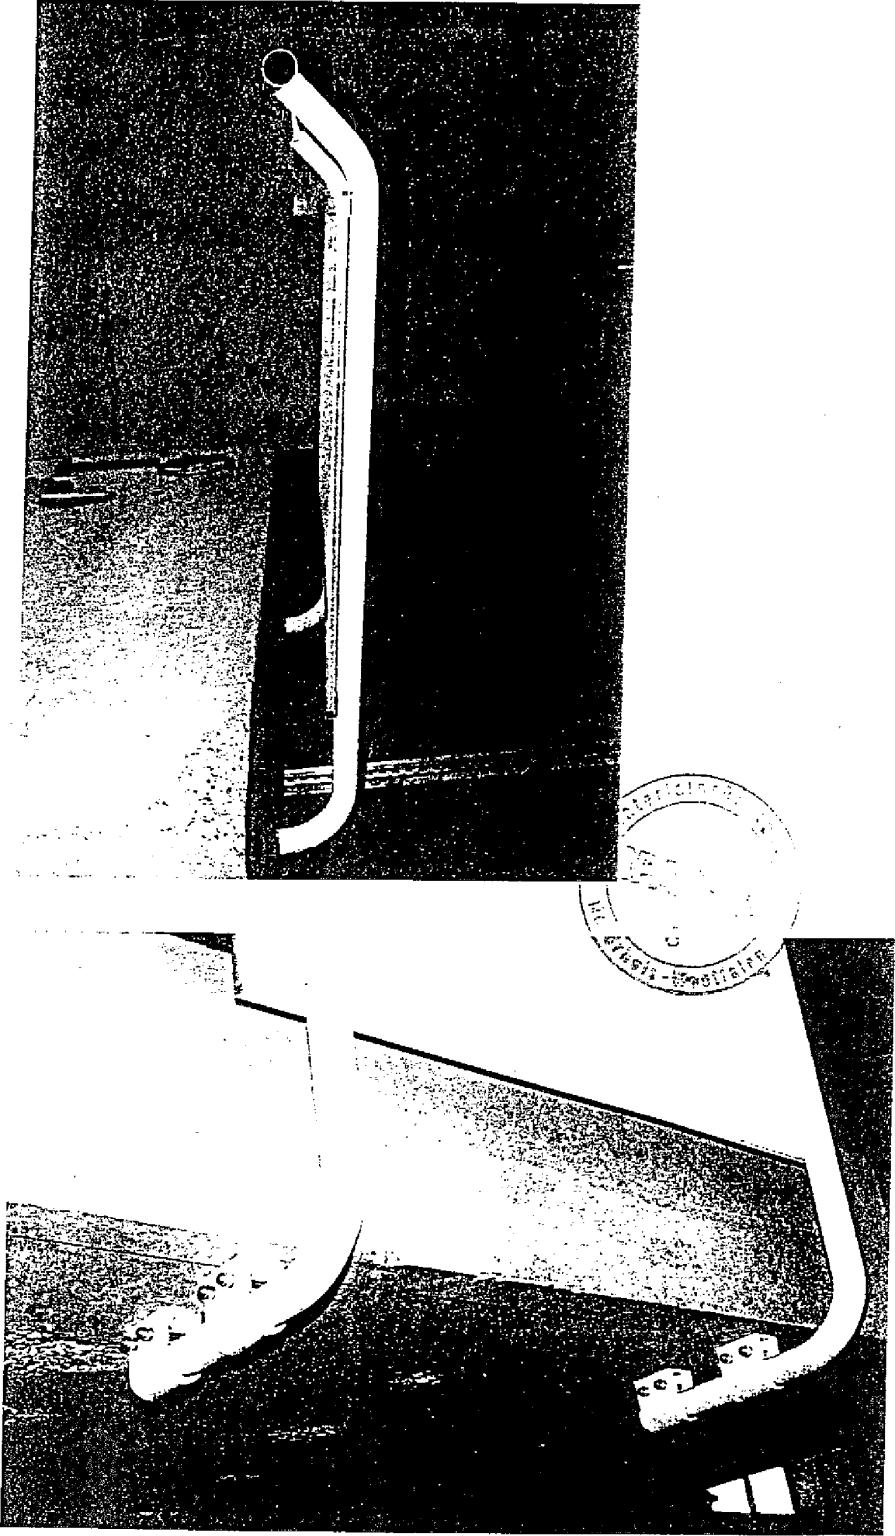 Obrázok 1: Systém zábradlia namontovaný na spodnej strane betónovej dosky Obrázok 2: Držiaky stĺpika